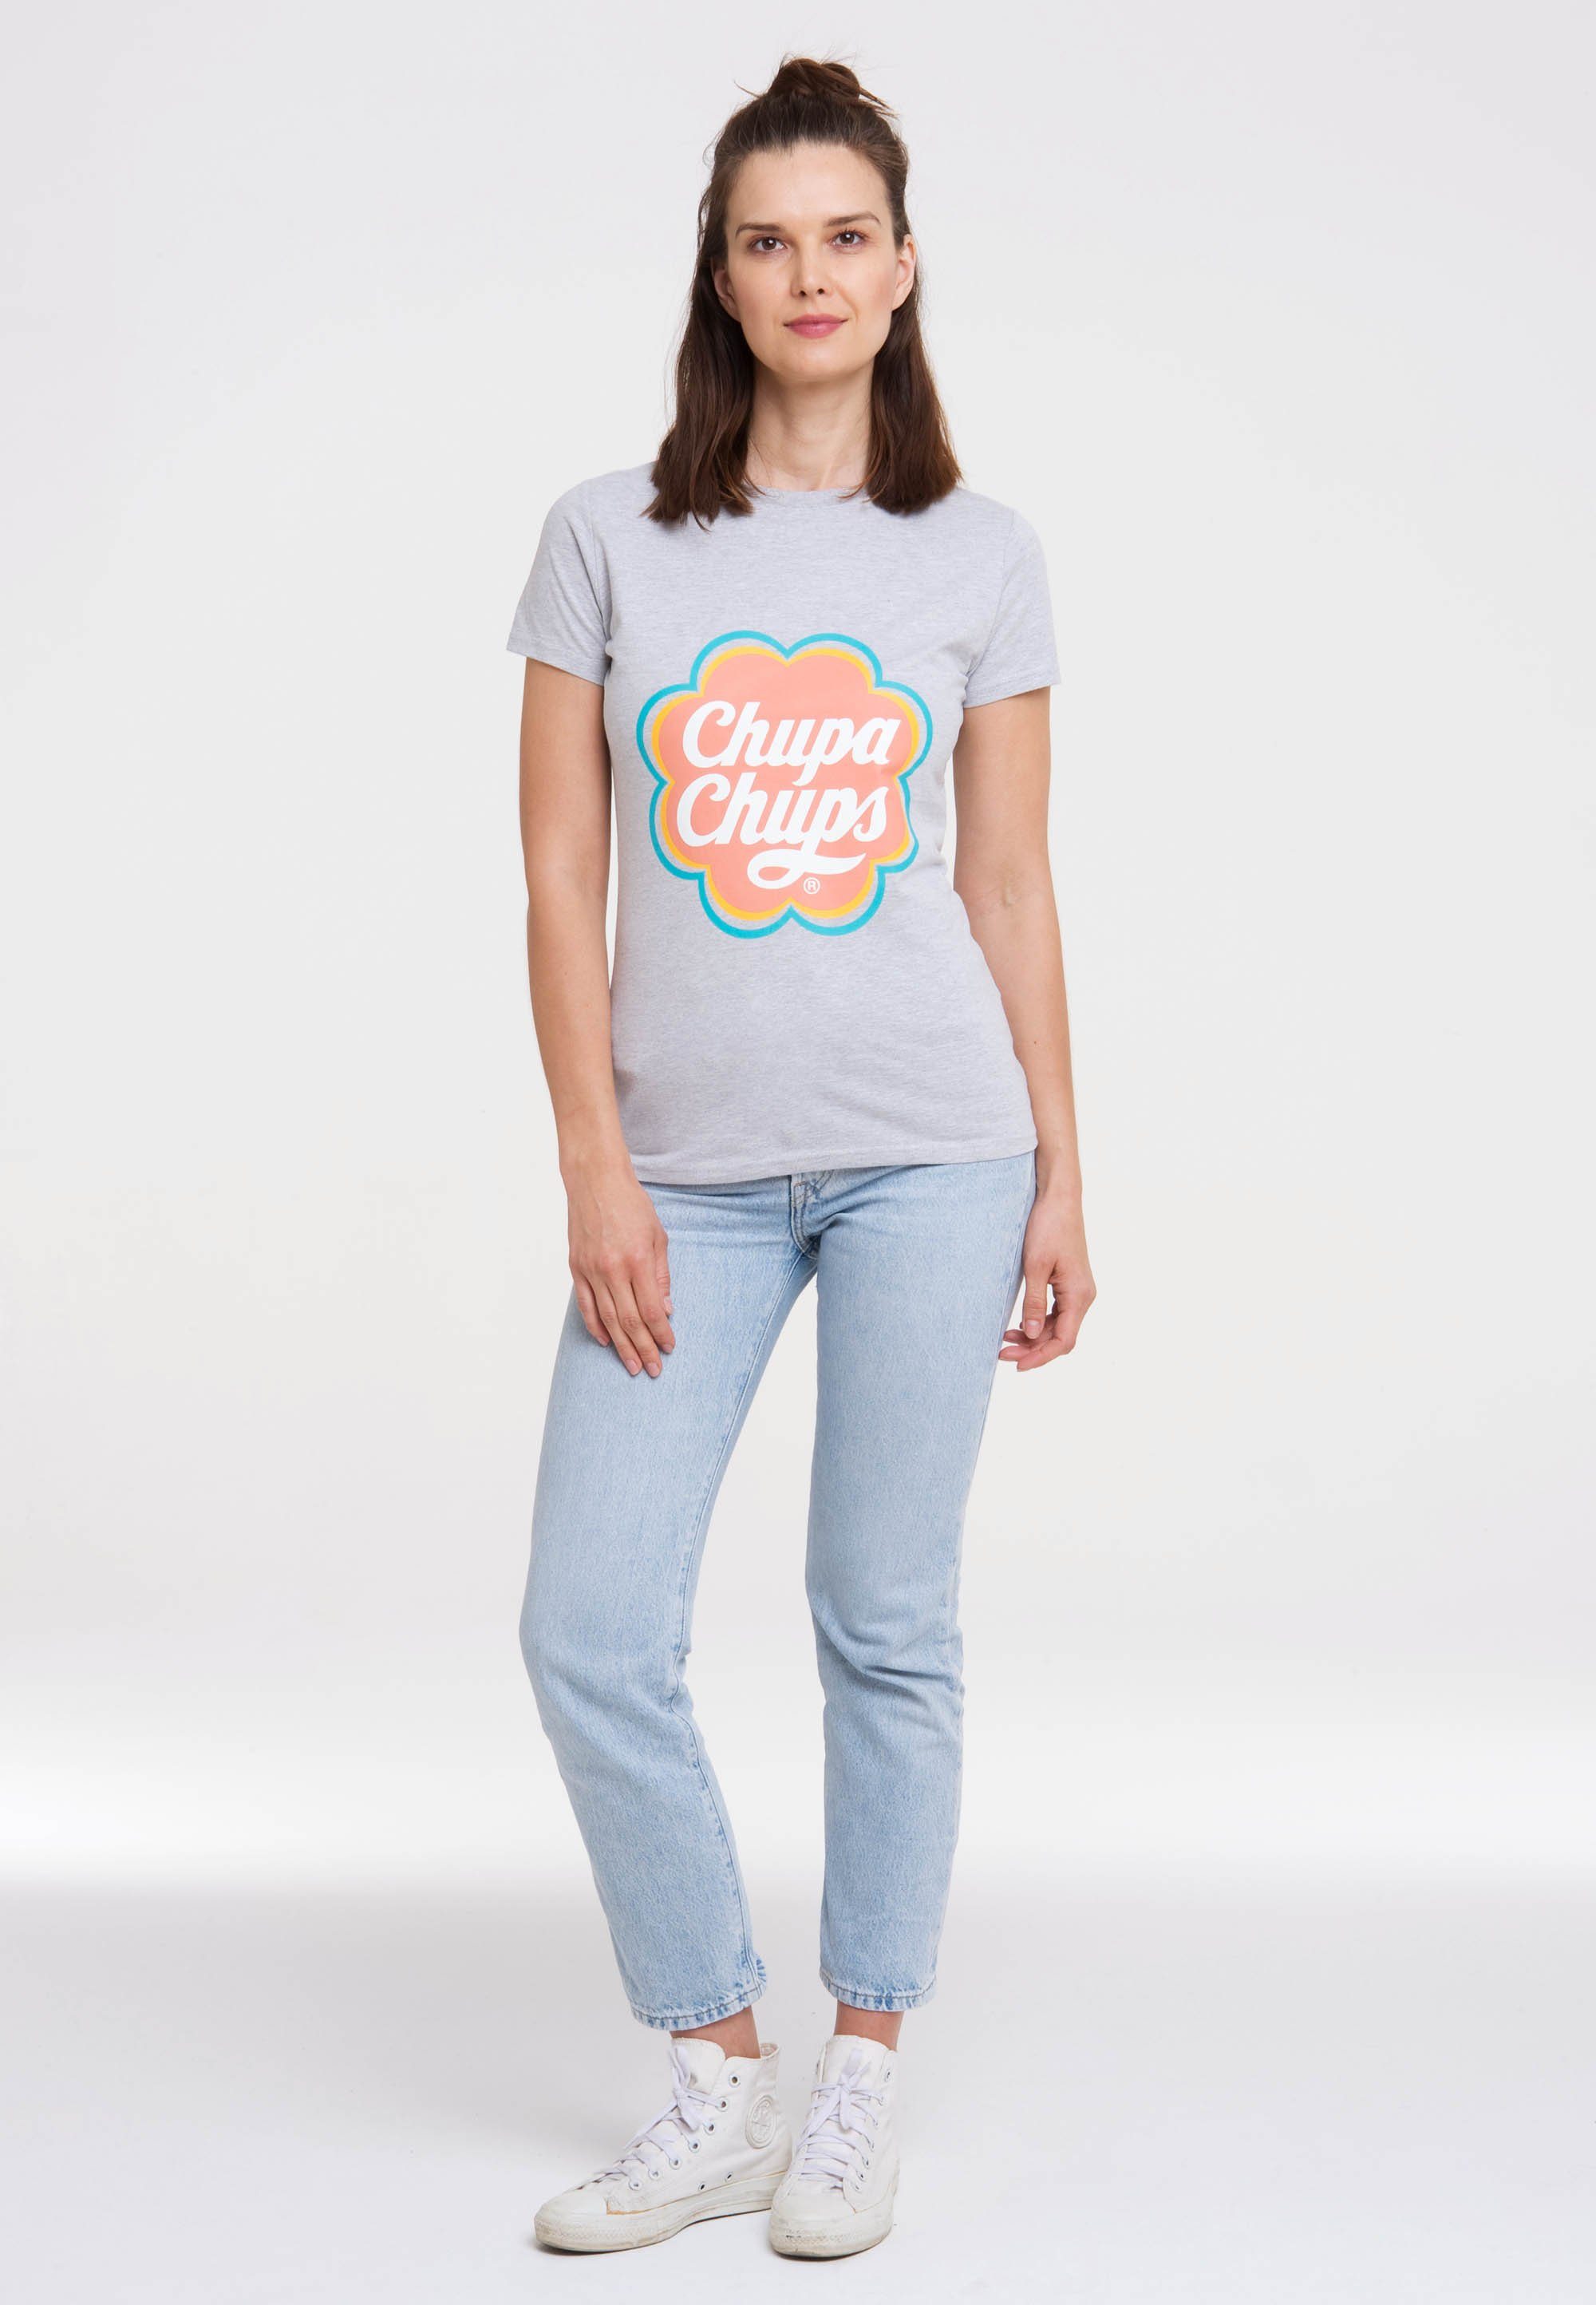 Design T-Shirt lizenzierten mit Chups LOGOSHIRT Chupa